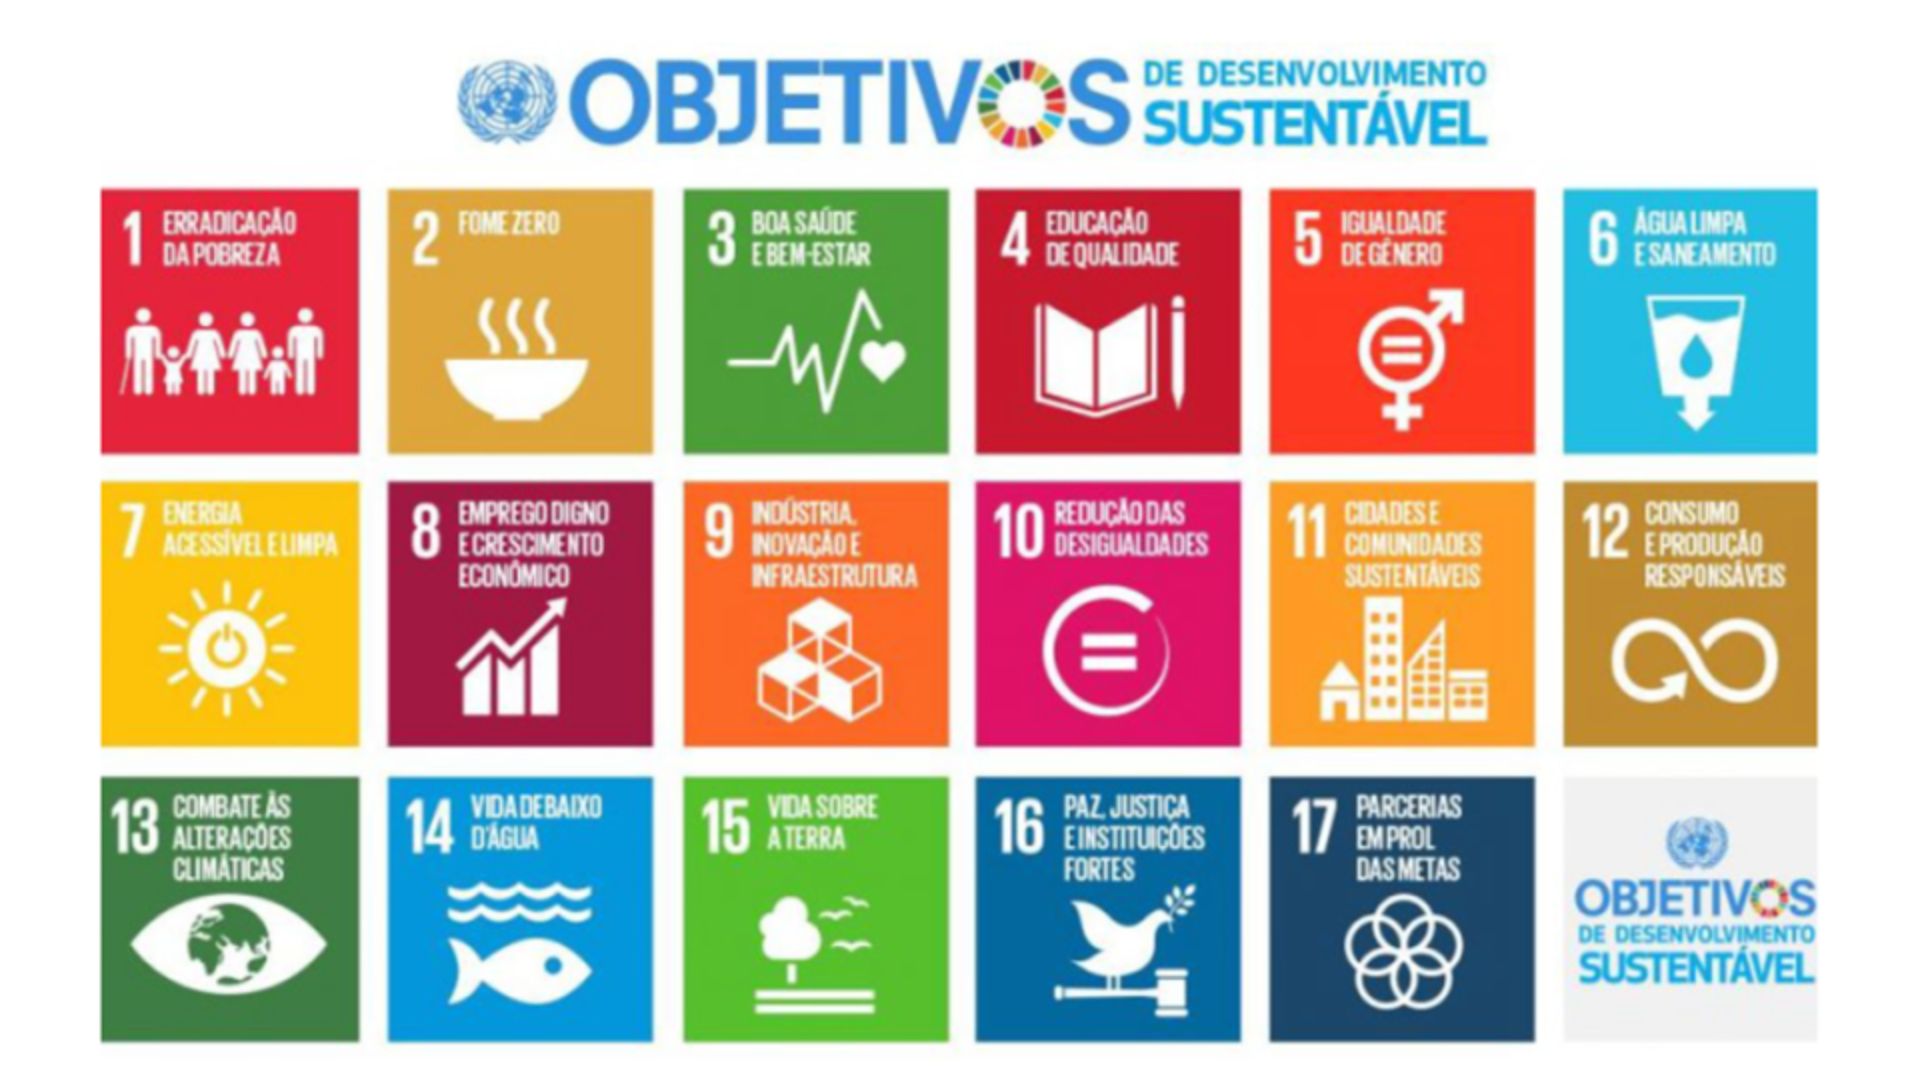 Objetivos de Desenvolvimento Sustentável (ODS-ONU) e a construção do mundo de regeneração